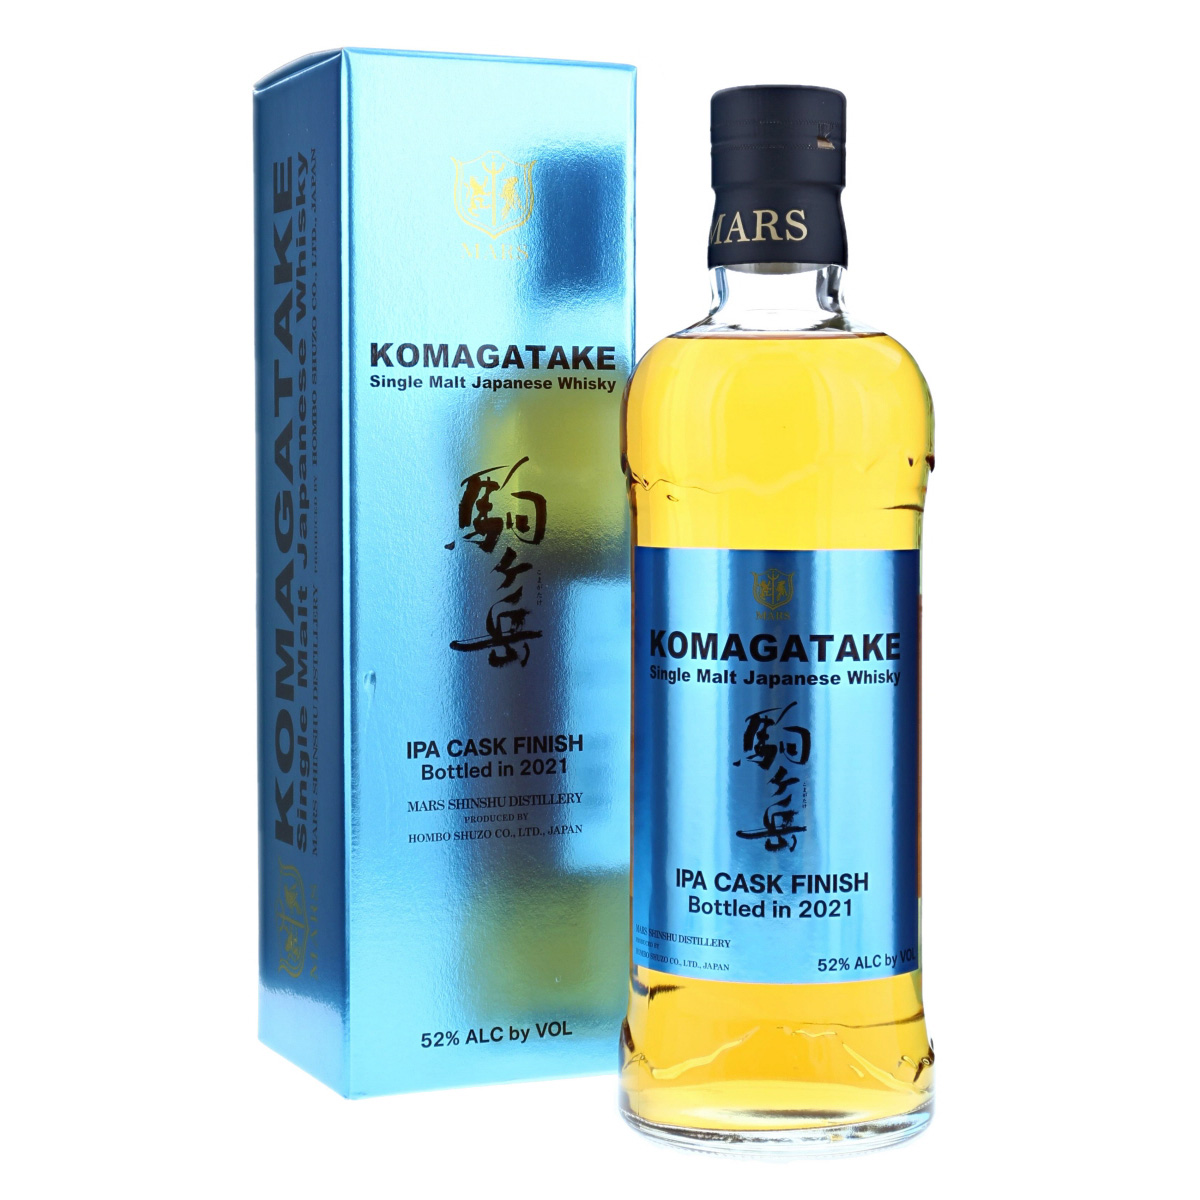 駒ヶ岳 Komagatake IPA Cask Finish Single Malt Japanese Whisky (2021 Edition)